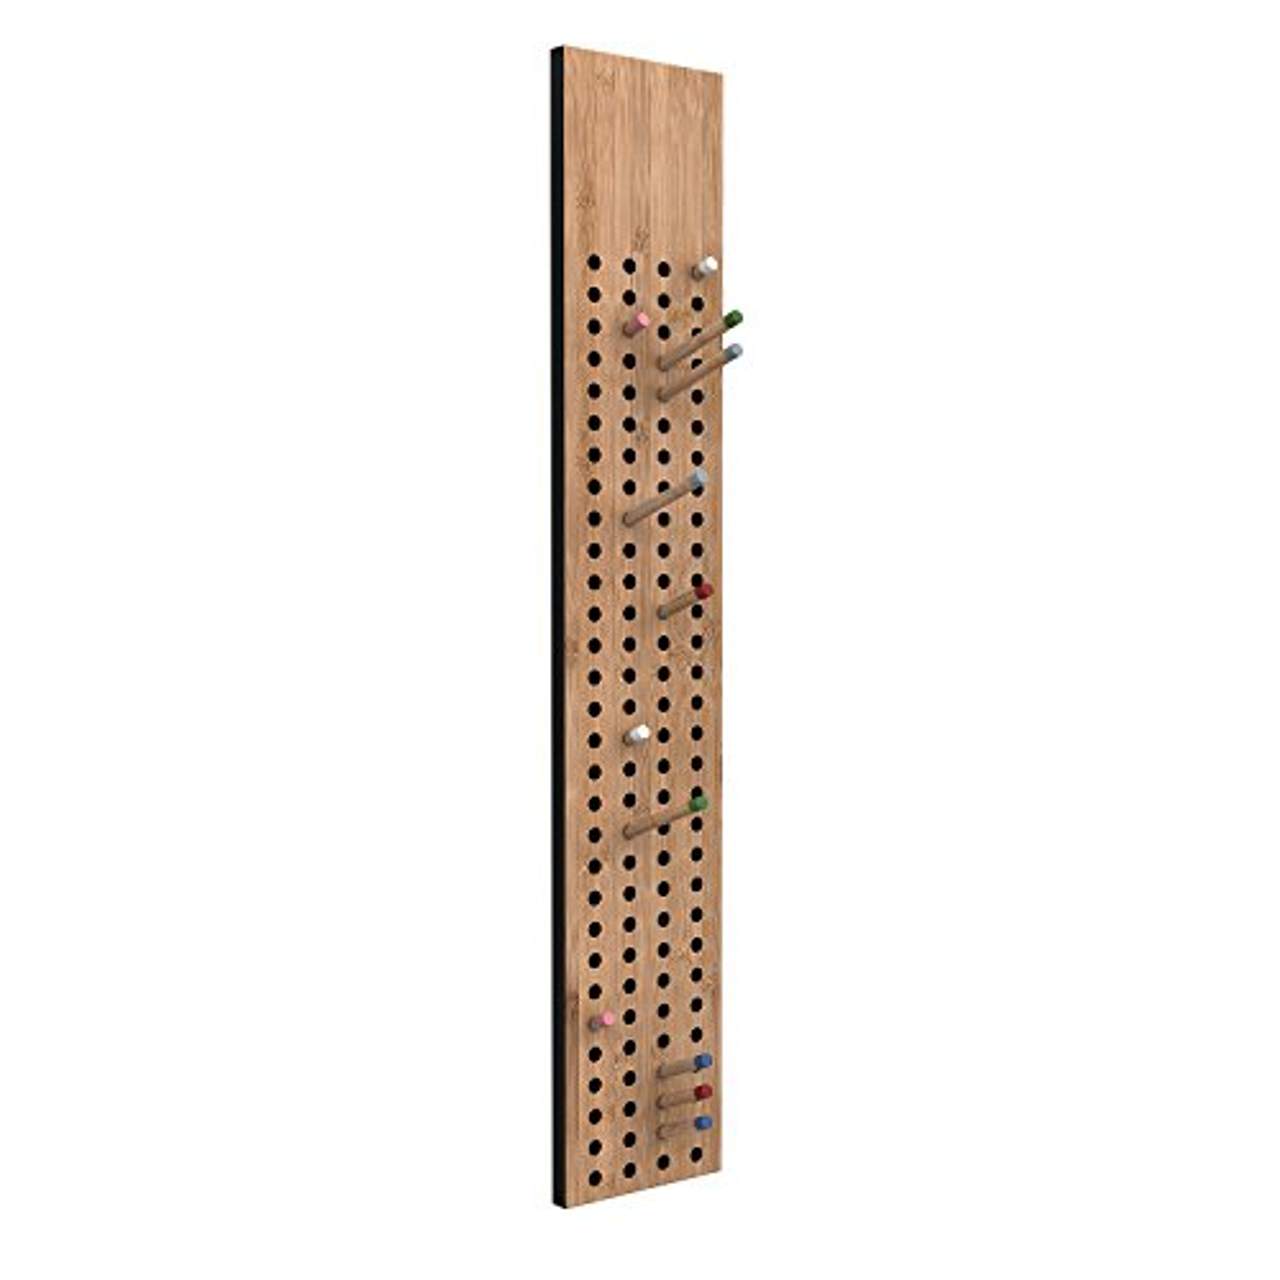 Dänische Wand-Garderobe modern aus zertifiziertem Bambus Holz